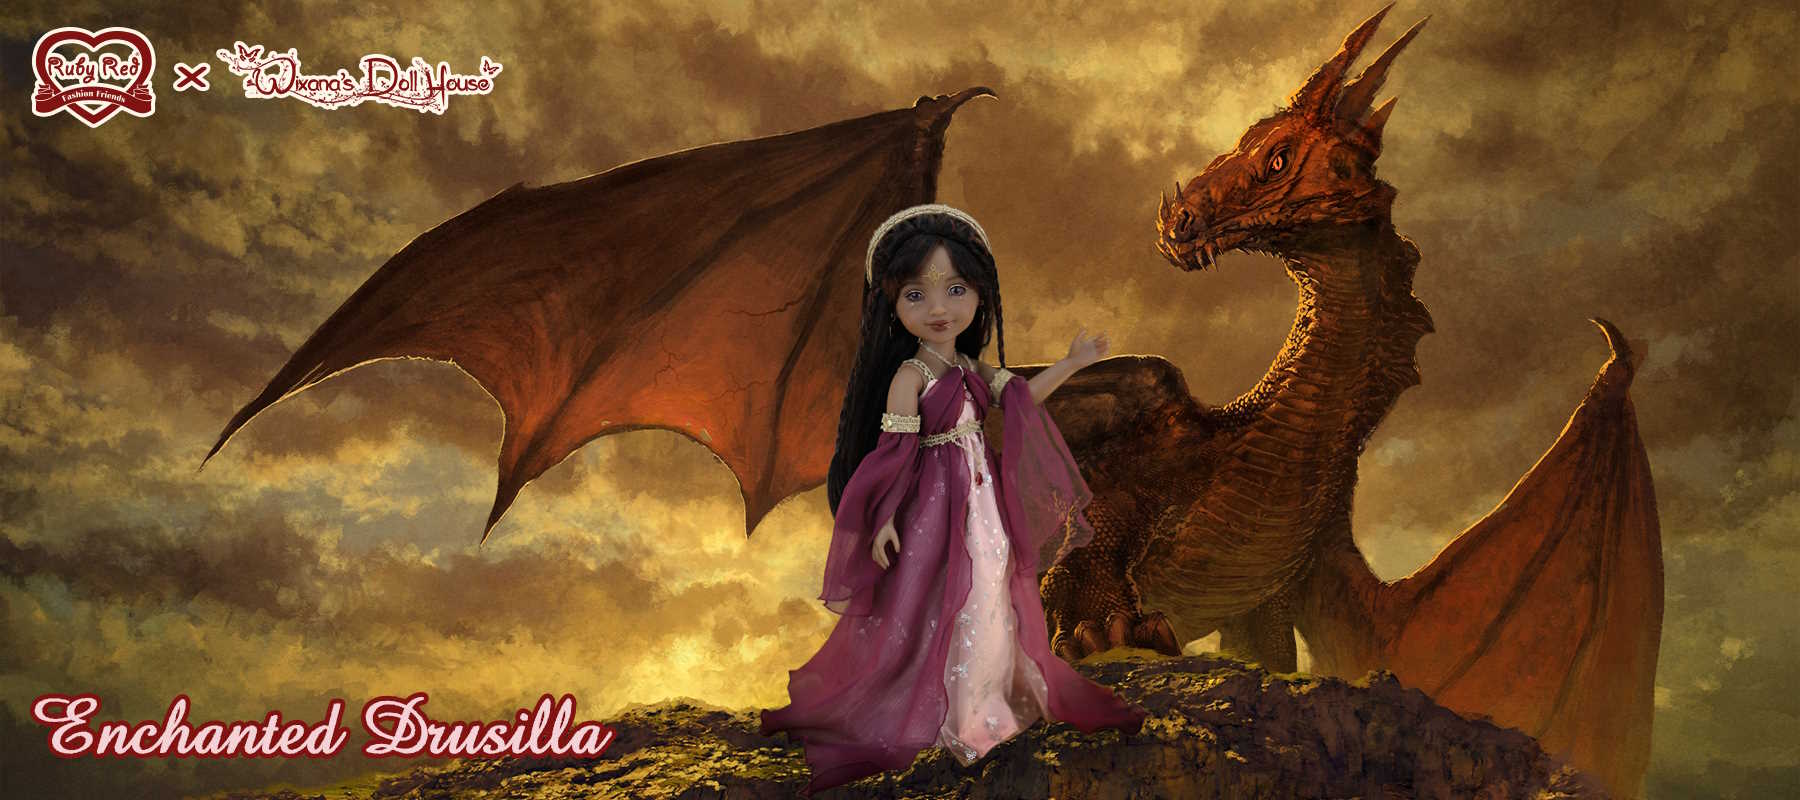 Enchanted Drusilla 